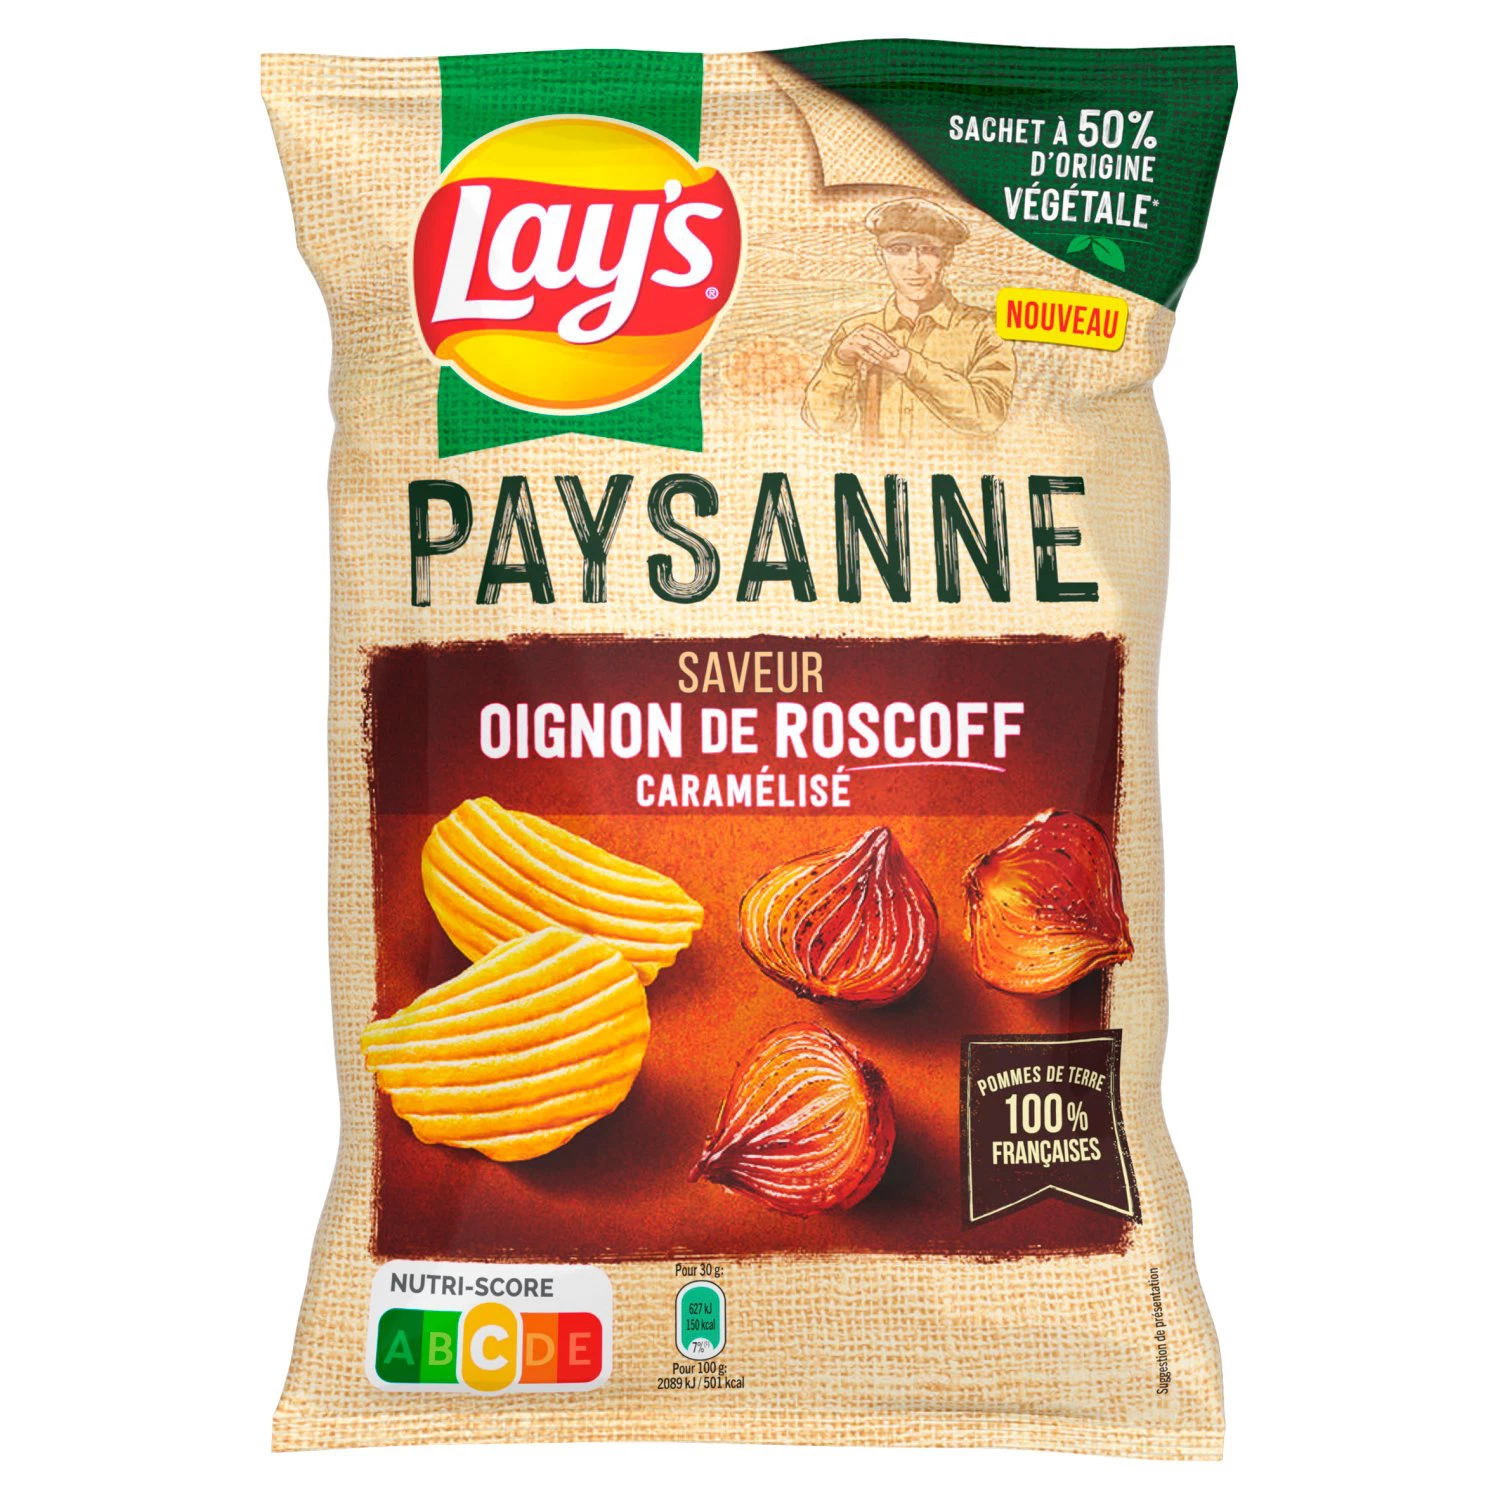 Chips Recette Paysanne Saveur Oignons de Roscoff caramélisés, 120g - LAY'S